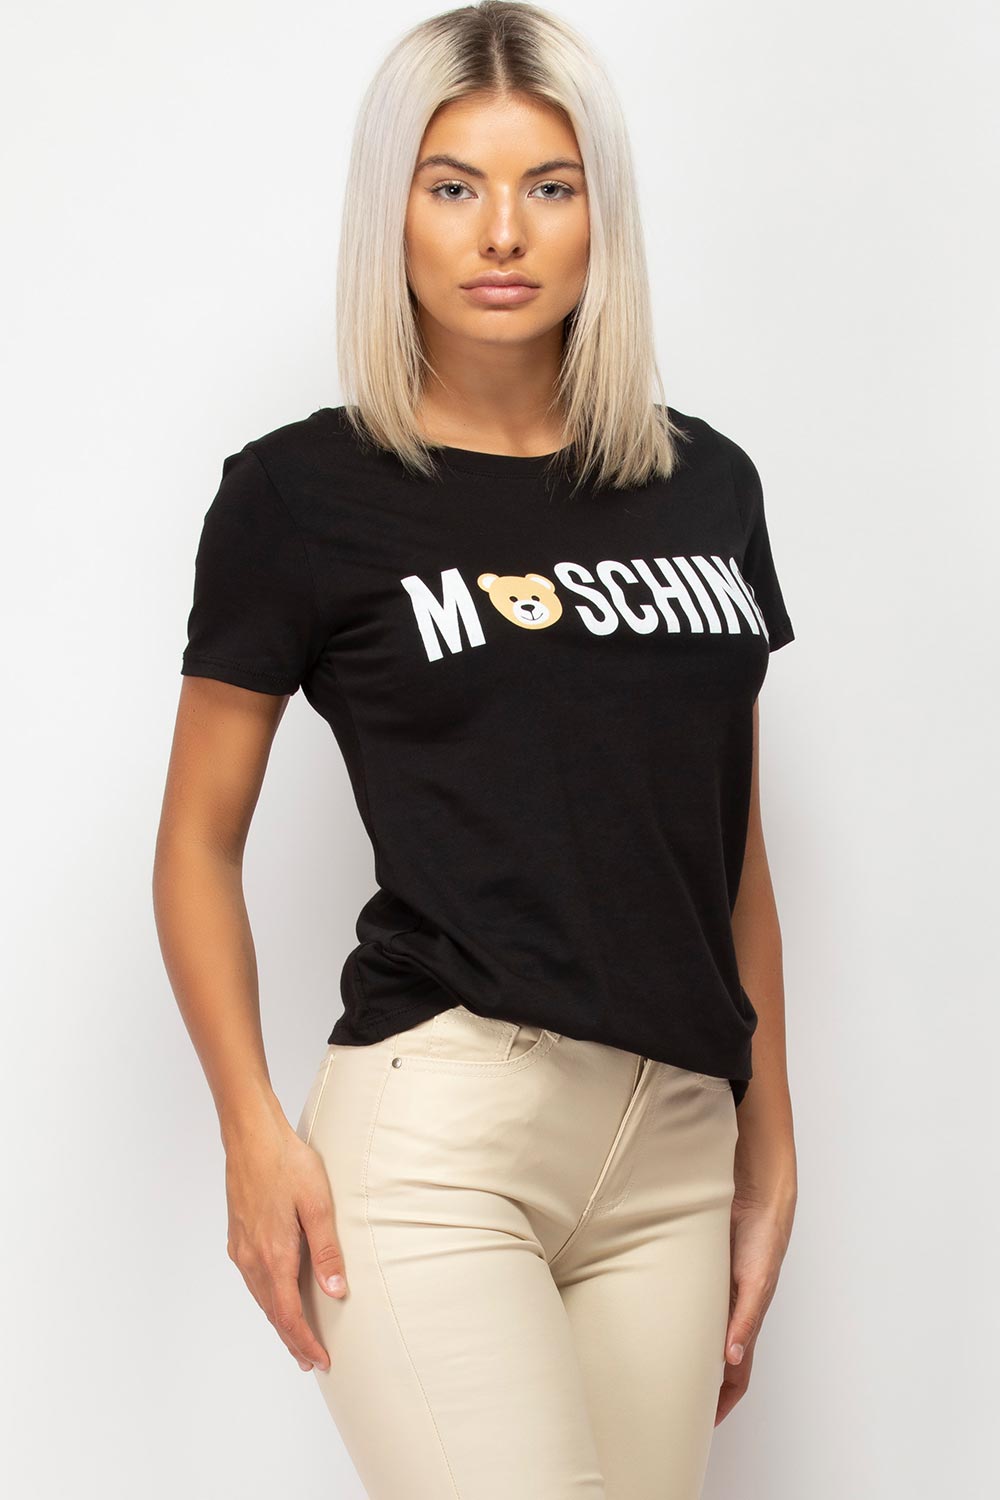 moschino inspired shirt